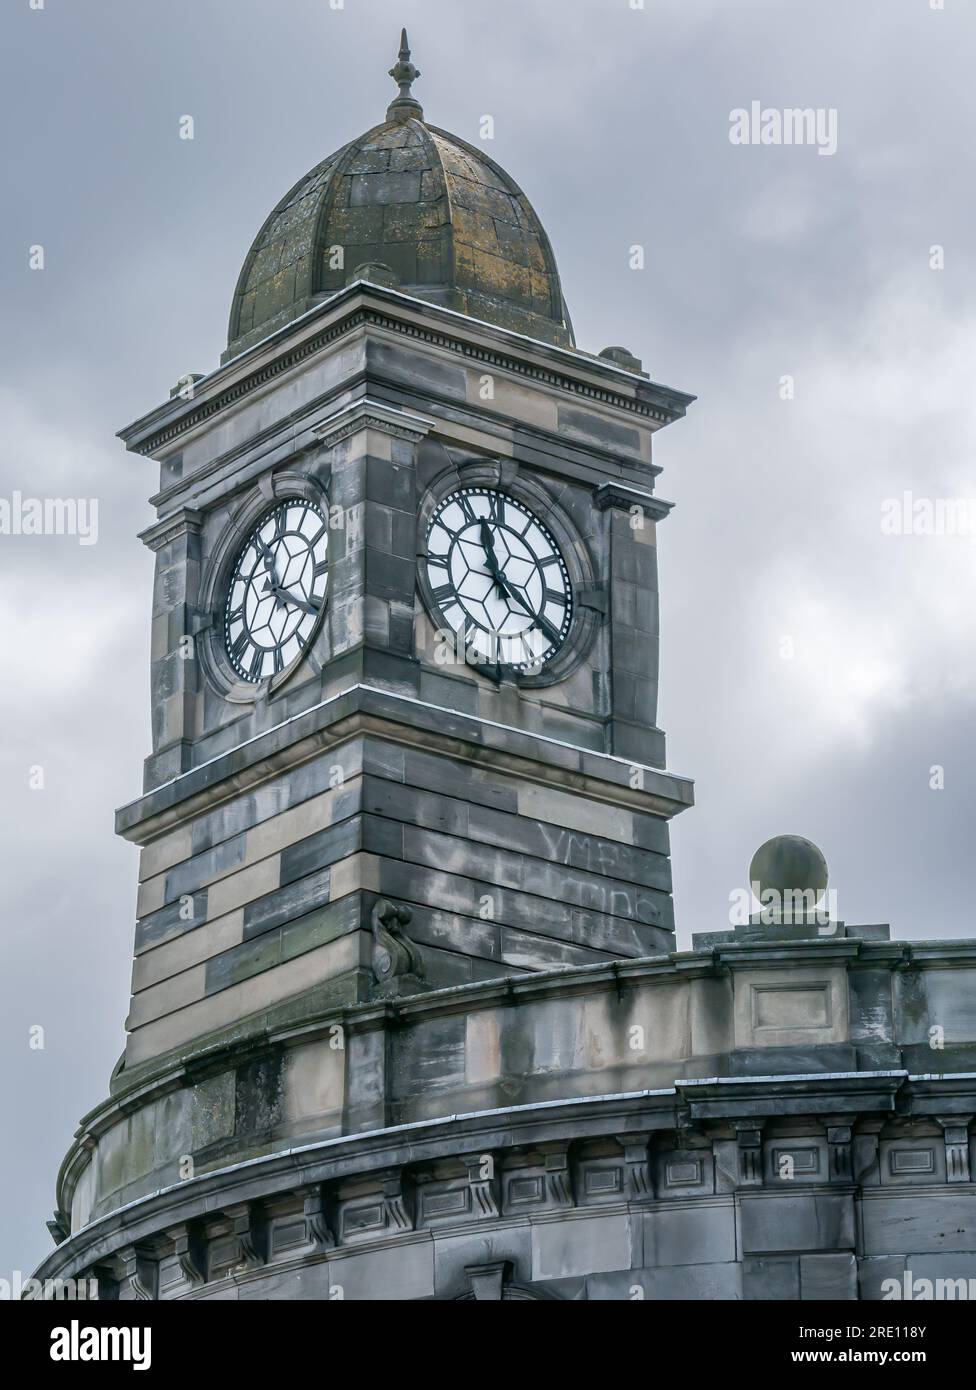 Vue de la tour de l'horloge Old Leith Central Station avec 11,20 heures du matin contre un ciel orageux, Édimbourg, Écosse, Royaume-Uni Banque D'Images